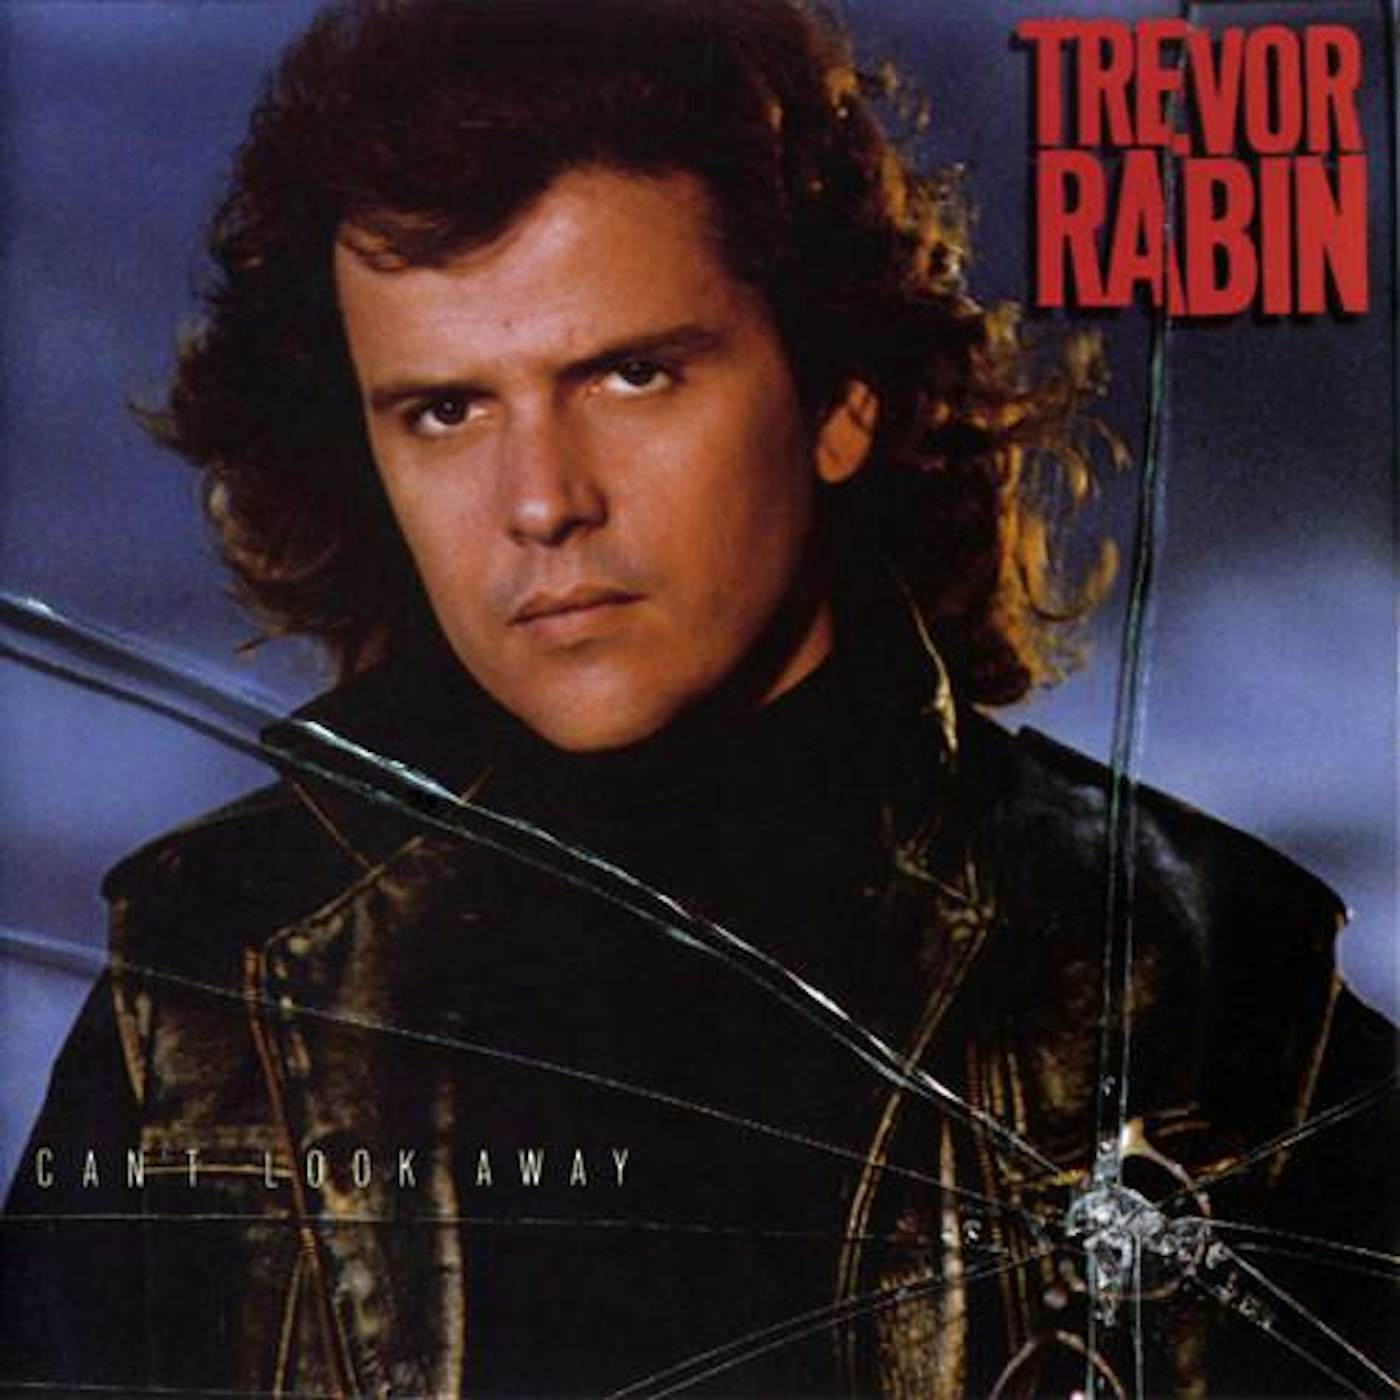 Trevor Rabin CAN'T LOOK AWAY Vinyl Record